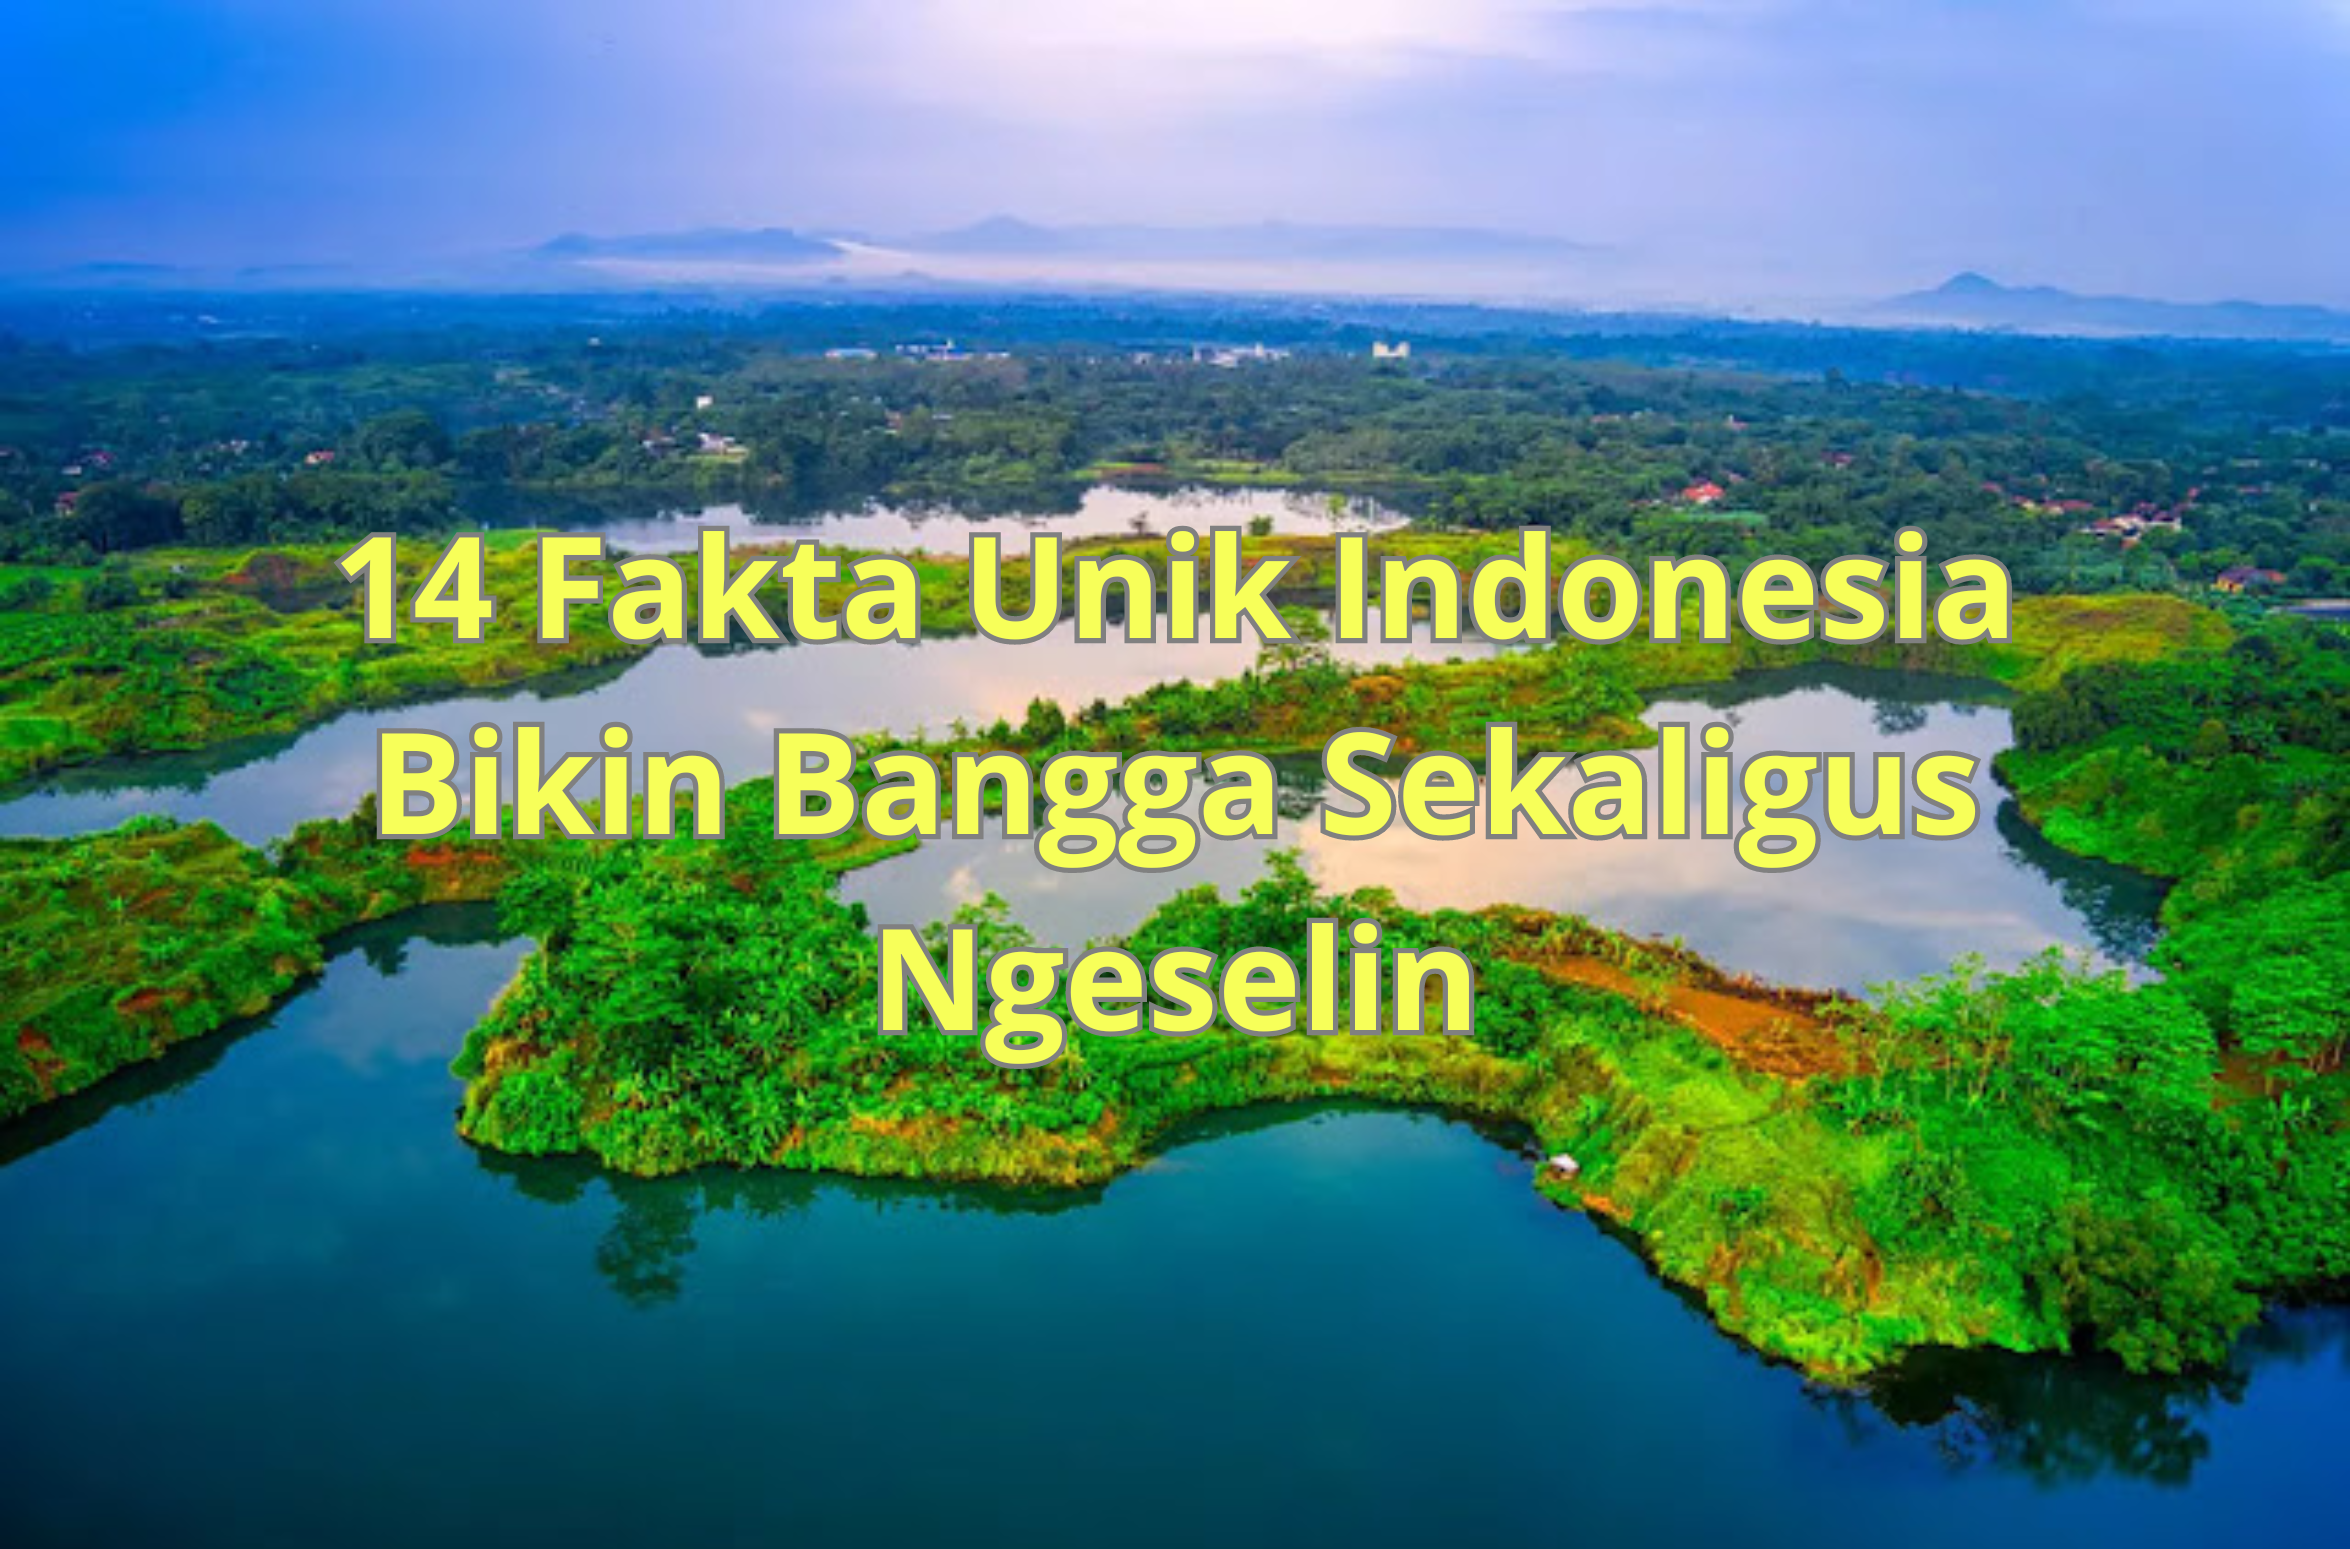 14 Fakta Unik Indonesia Bikin Bangga Sekaligus Ngeselin - Jelajah Fakta